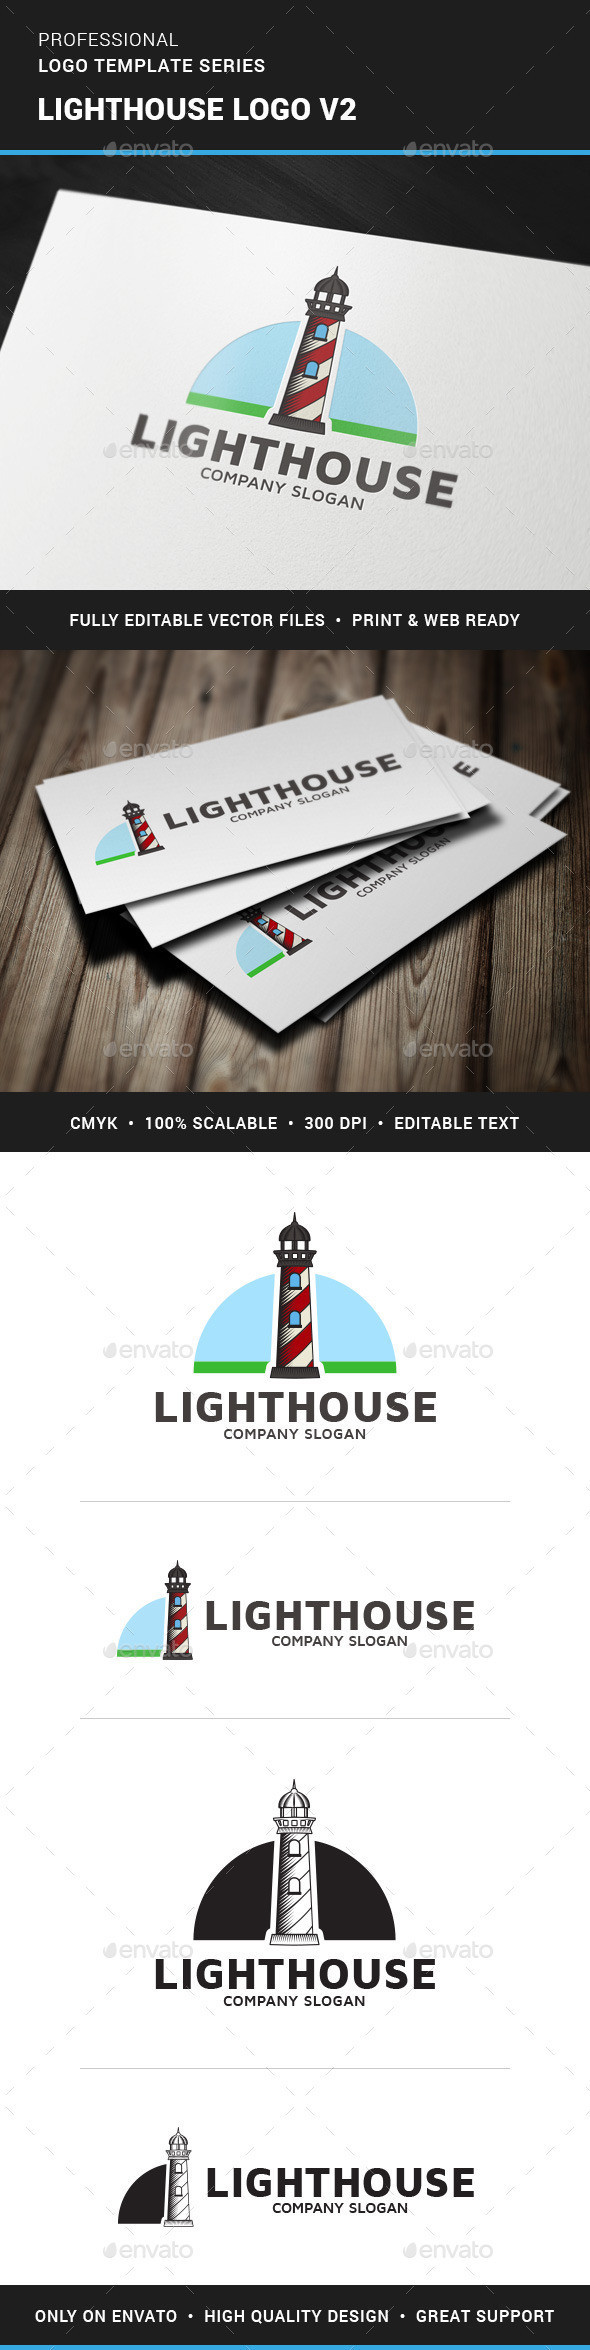 Lighthouse logo template v2